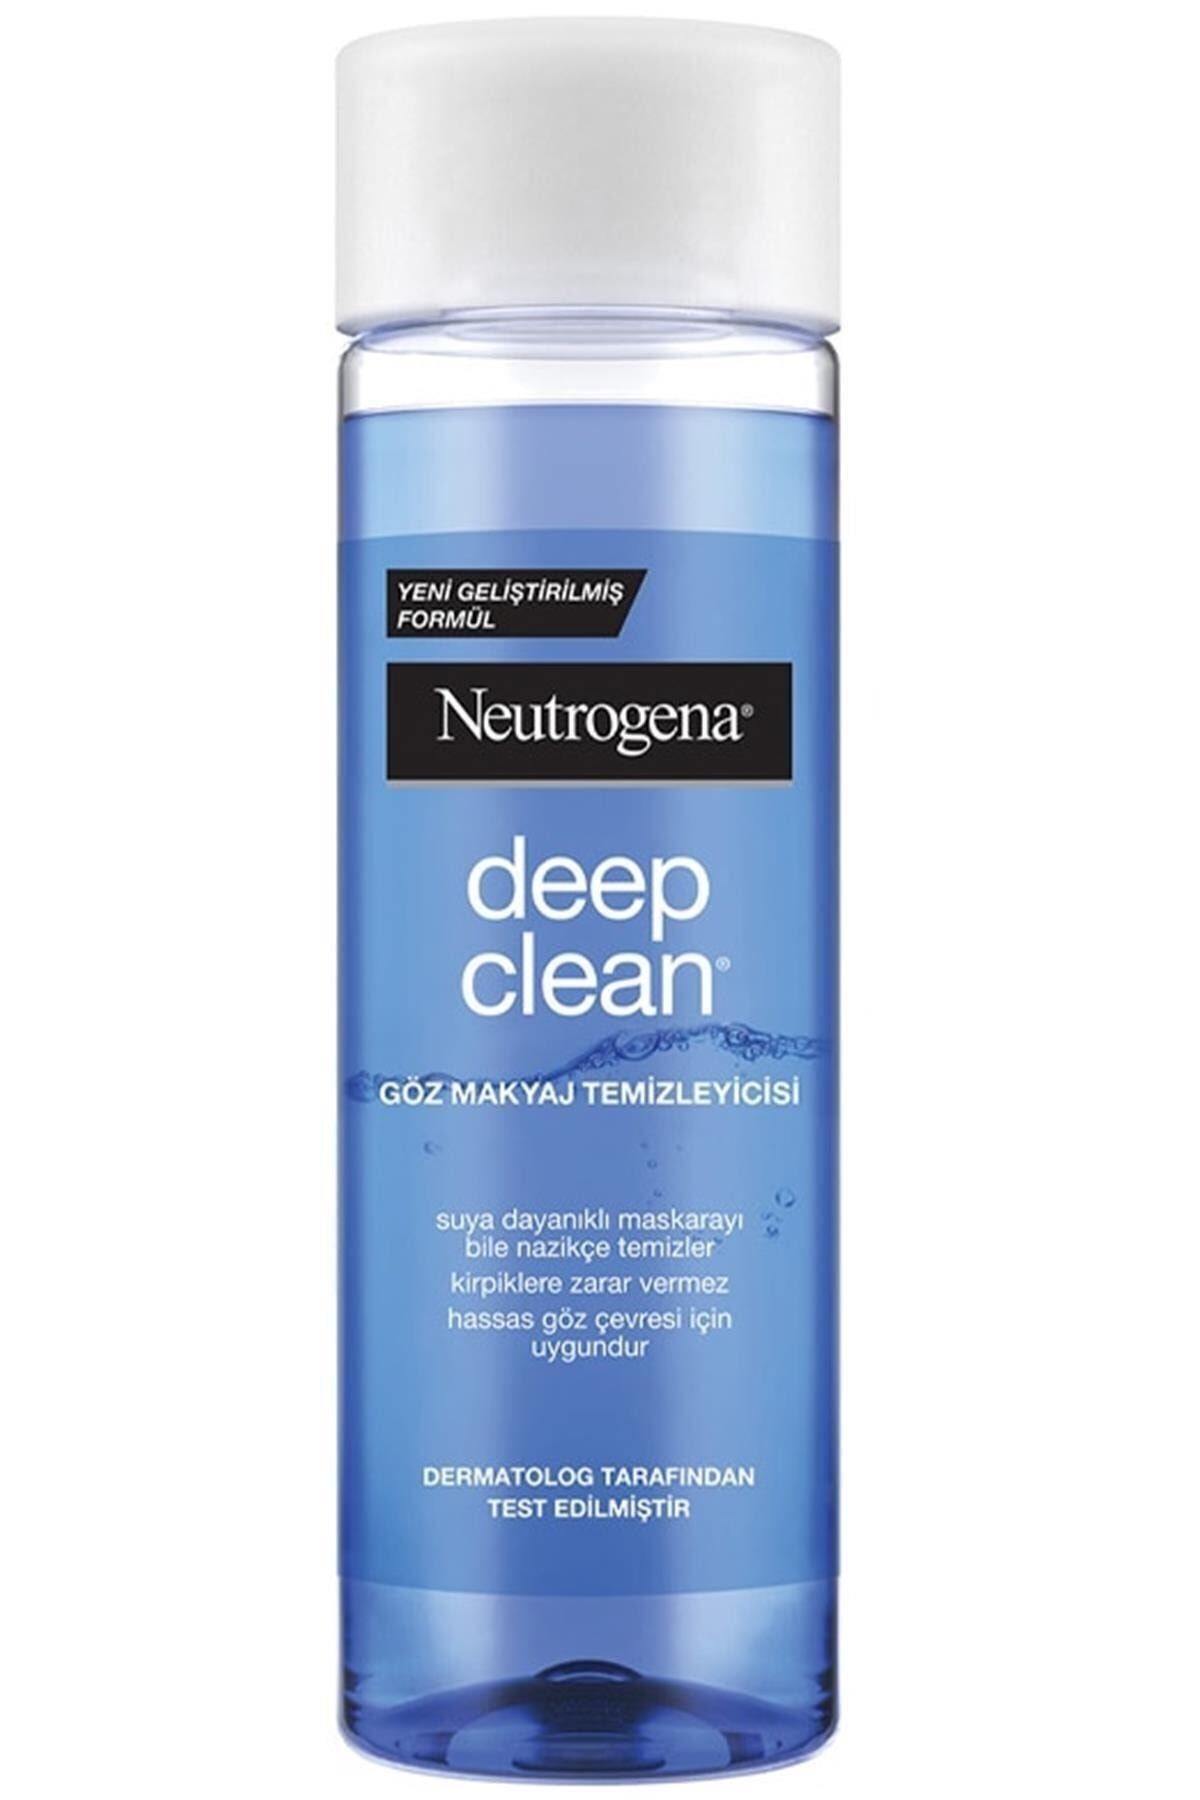 Neutrogena Deep Clean Göz Makyaj Temizleyicisi (yumuşak Ve Kolay Uygulama, 125 Ml)